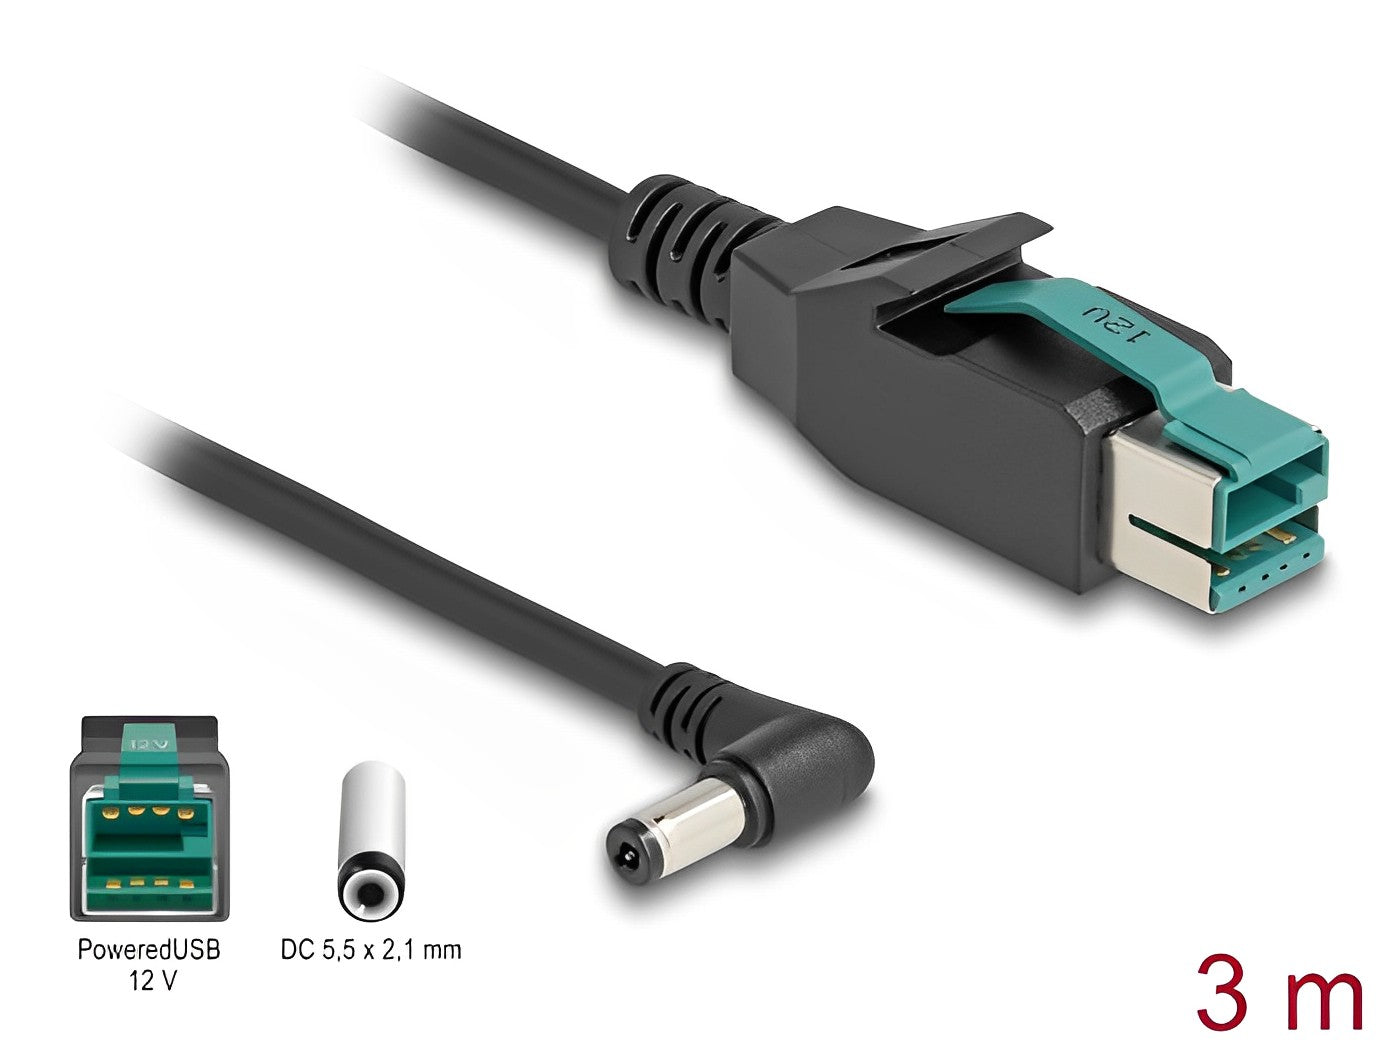 כבל USB עבור מדפסות קופה ומסופים תקע PoweredUSB 12V לתקע DC 5.5x2.1 בזווית 90° - delock.israel